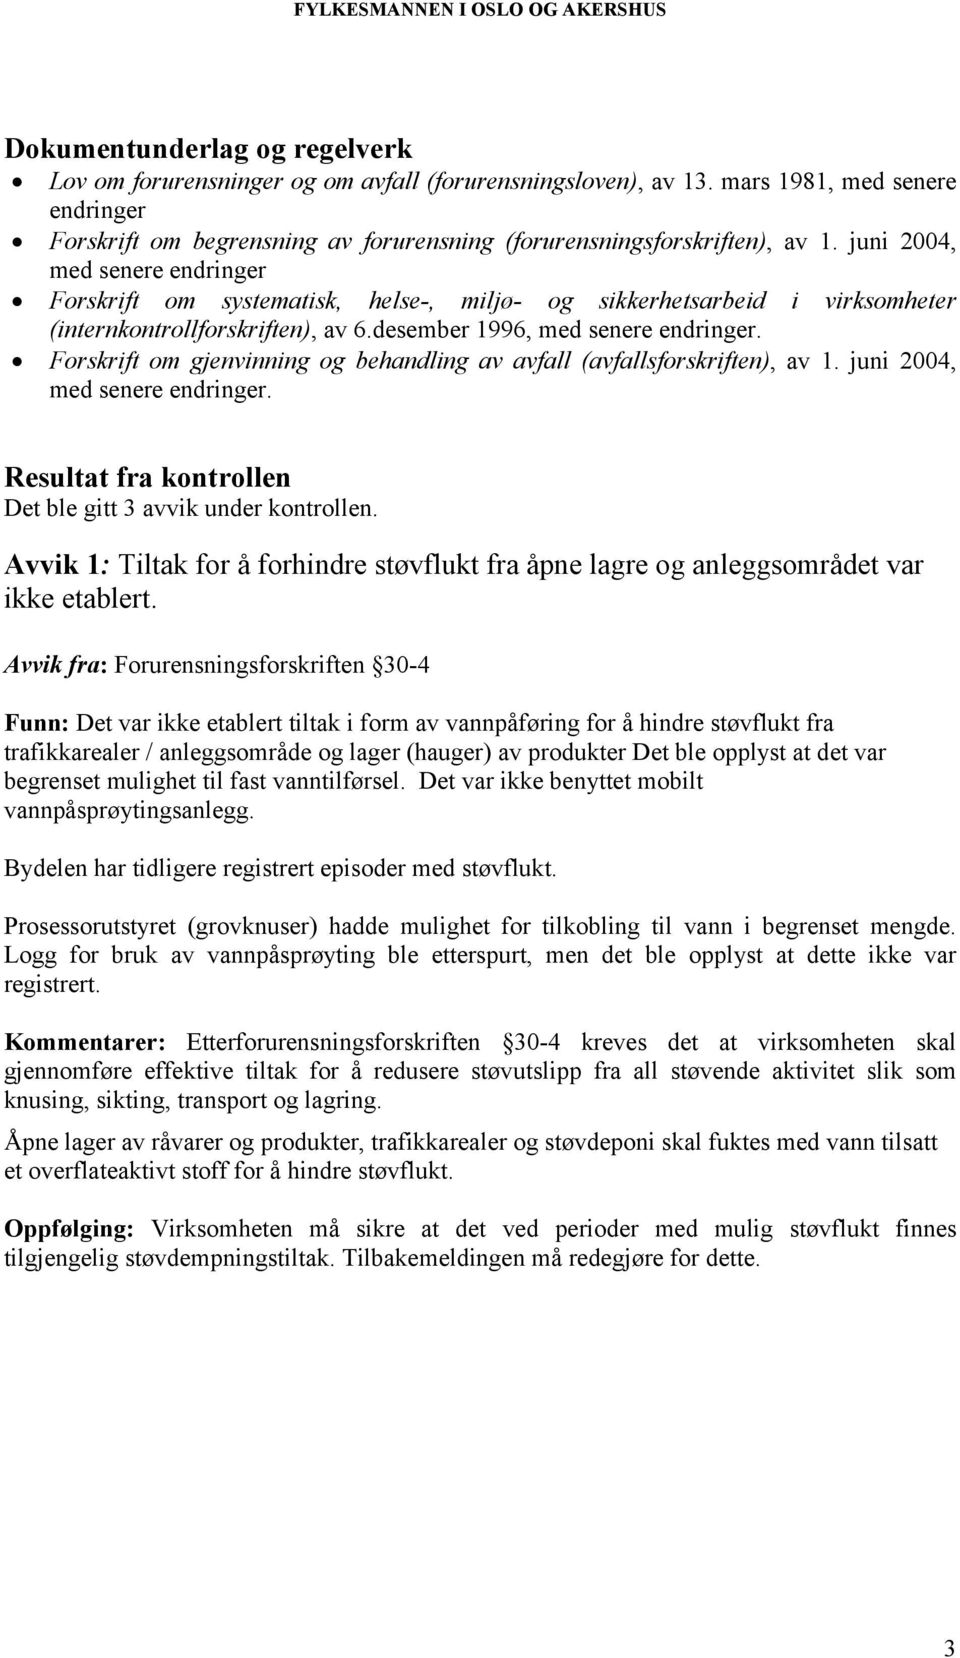 Forskrift om gjenvinning og behandling av avfall (avfallsforskriften), av 1. juni 2004, med senere endringer. Resultat fra kontrollen Det ble gitt 3 avvik under kontrollen.